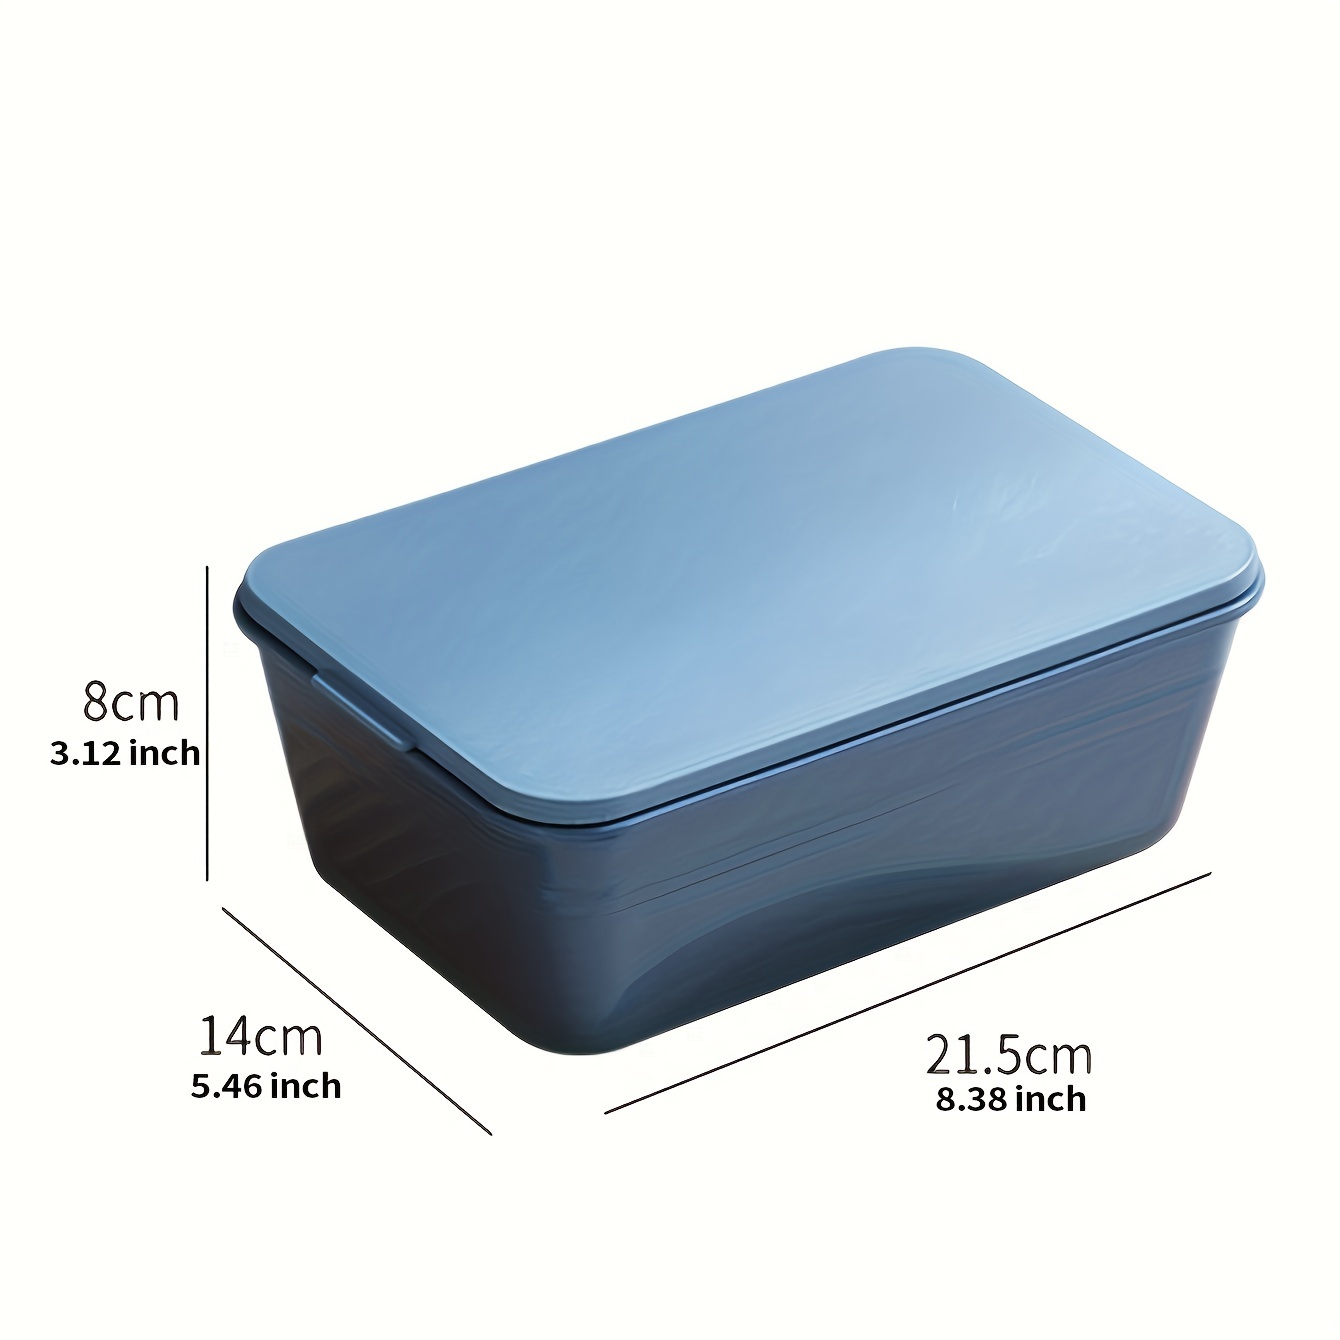 Unique Bargains Kitchen Plastic Double Layer Lunch Box Food Container Set w  Spoon Blue - Blue, White, Black - Bed Bath & Beyond - 28770977